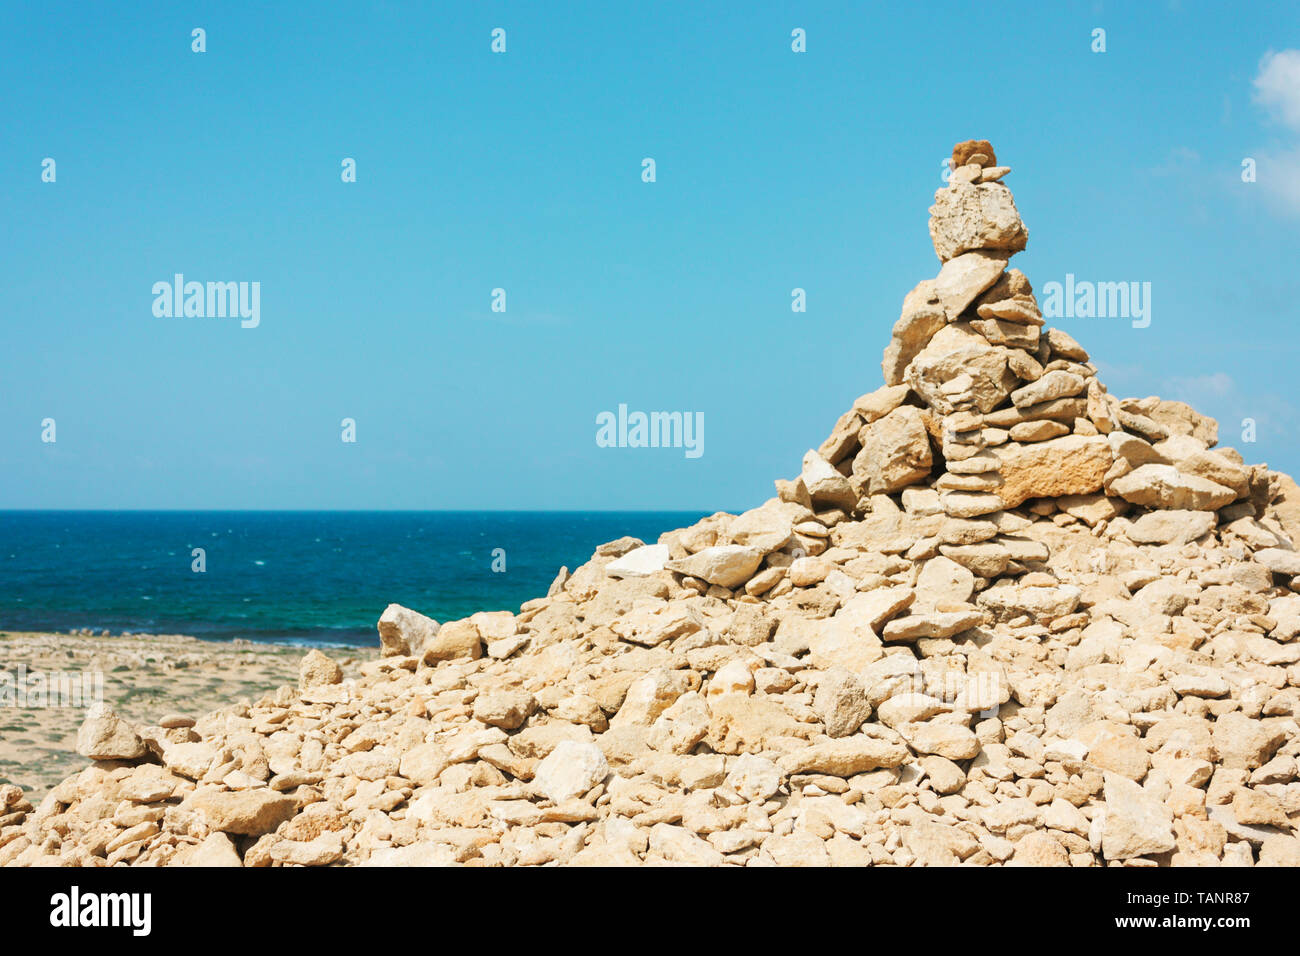 Solde de grosses pierres sur la plage, un monticule. Le concept d'harmonie, d'équilibre, Zen Banque D'Images